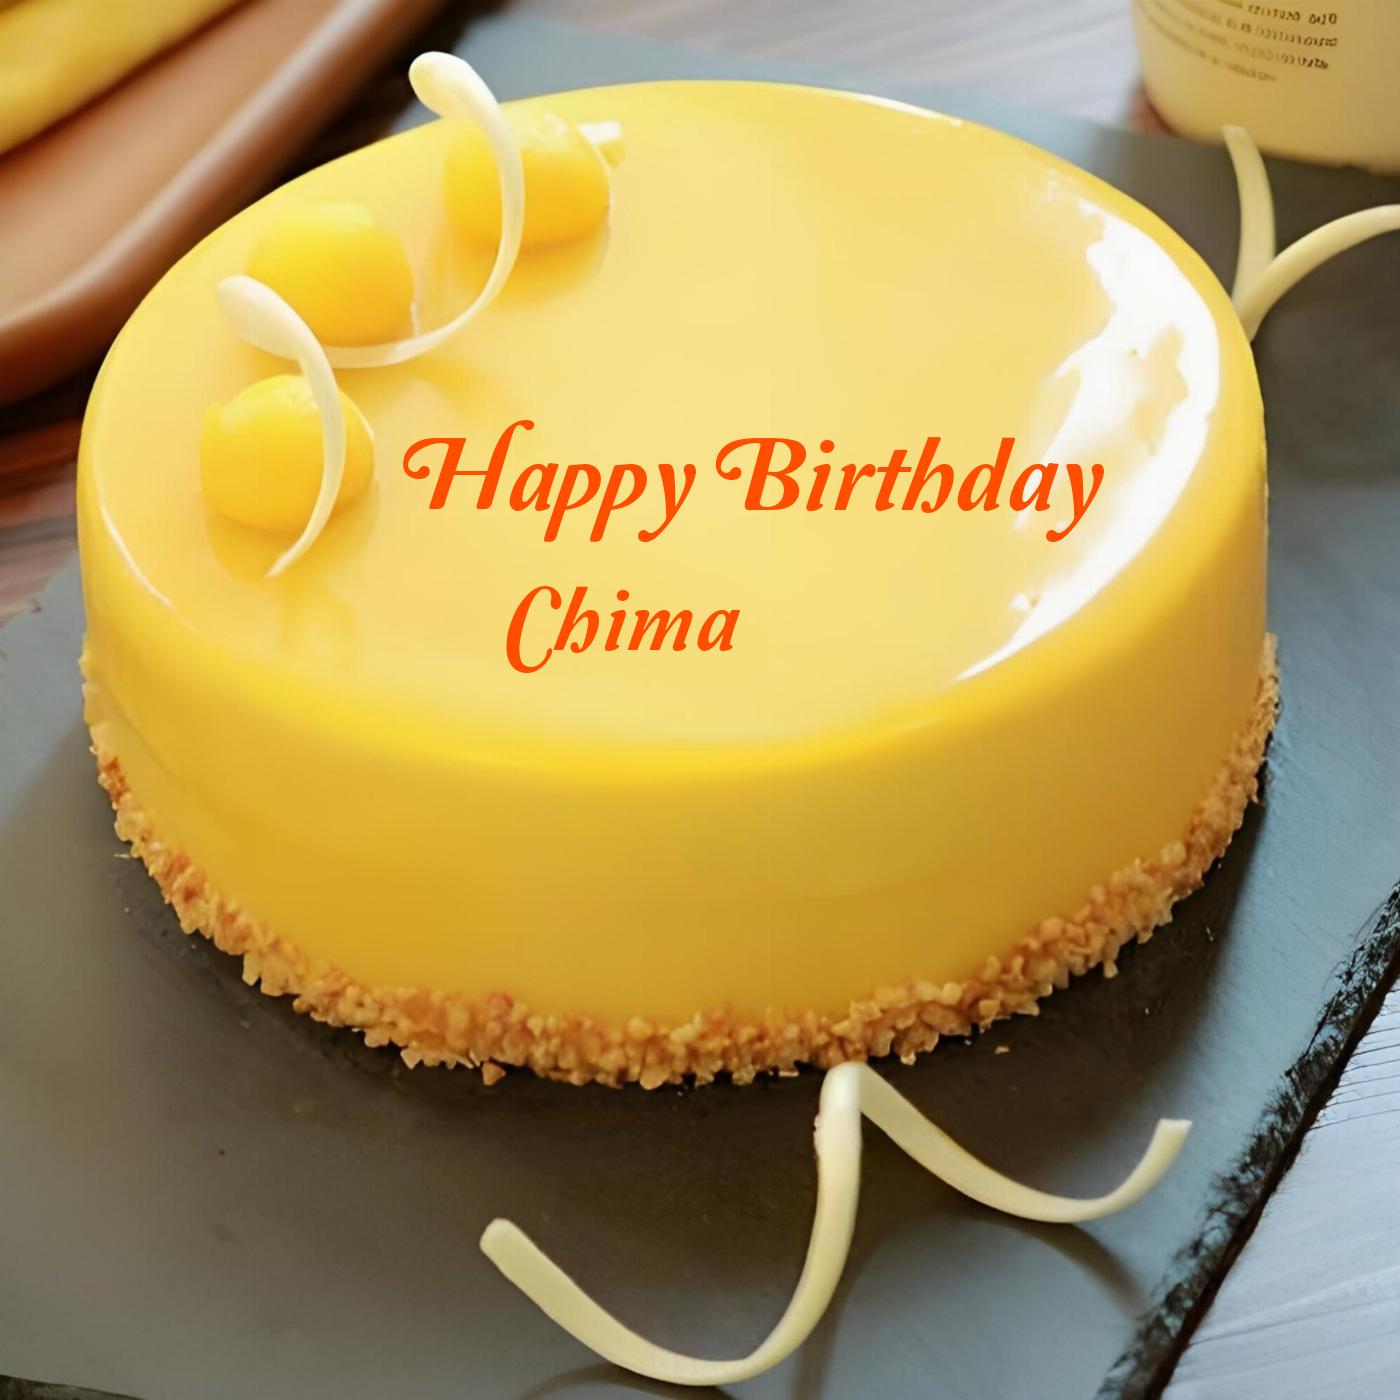 Happy Birthday Chima Beautiful Yellow Cake